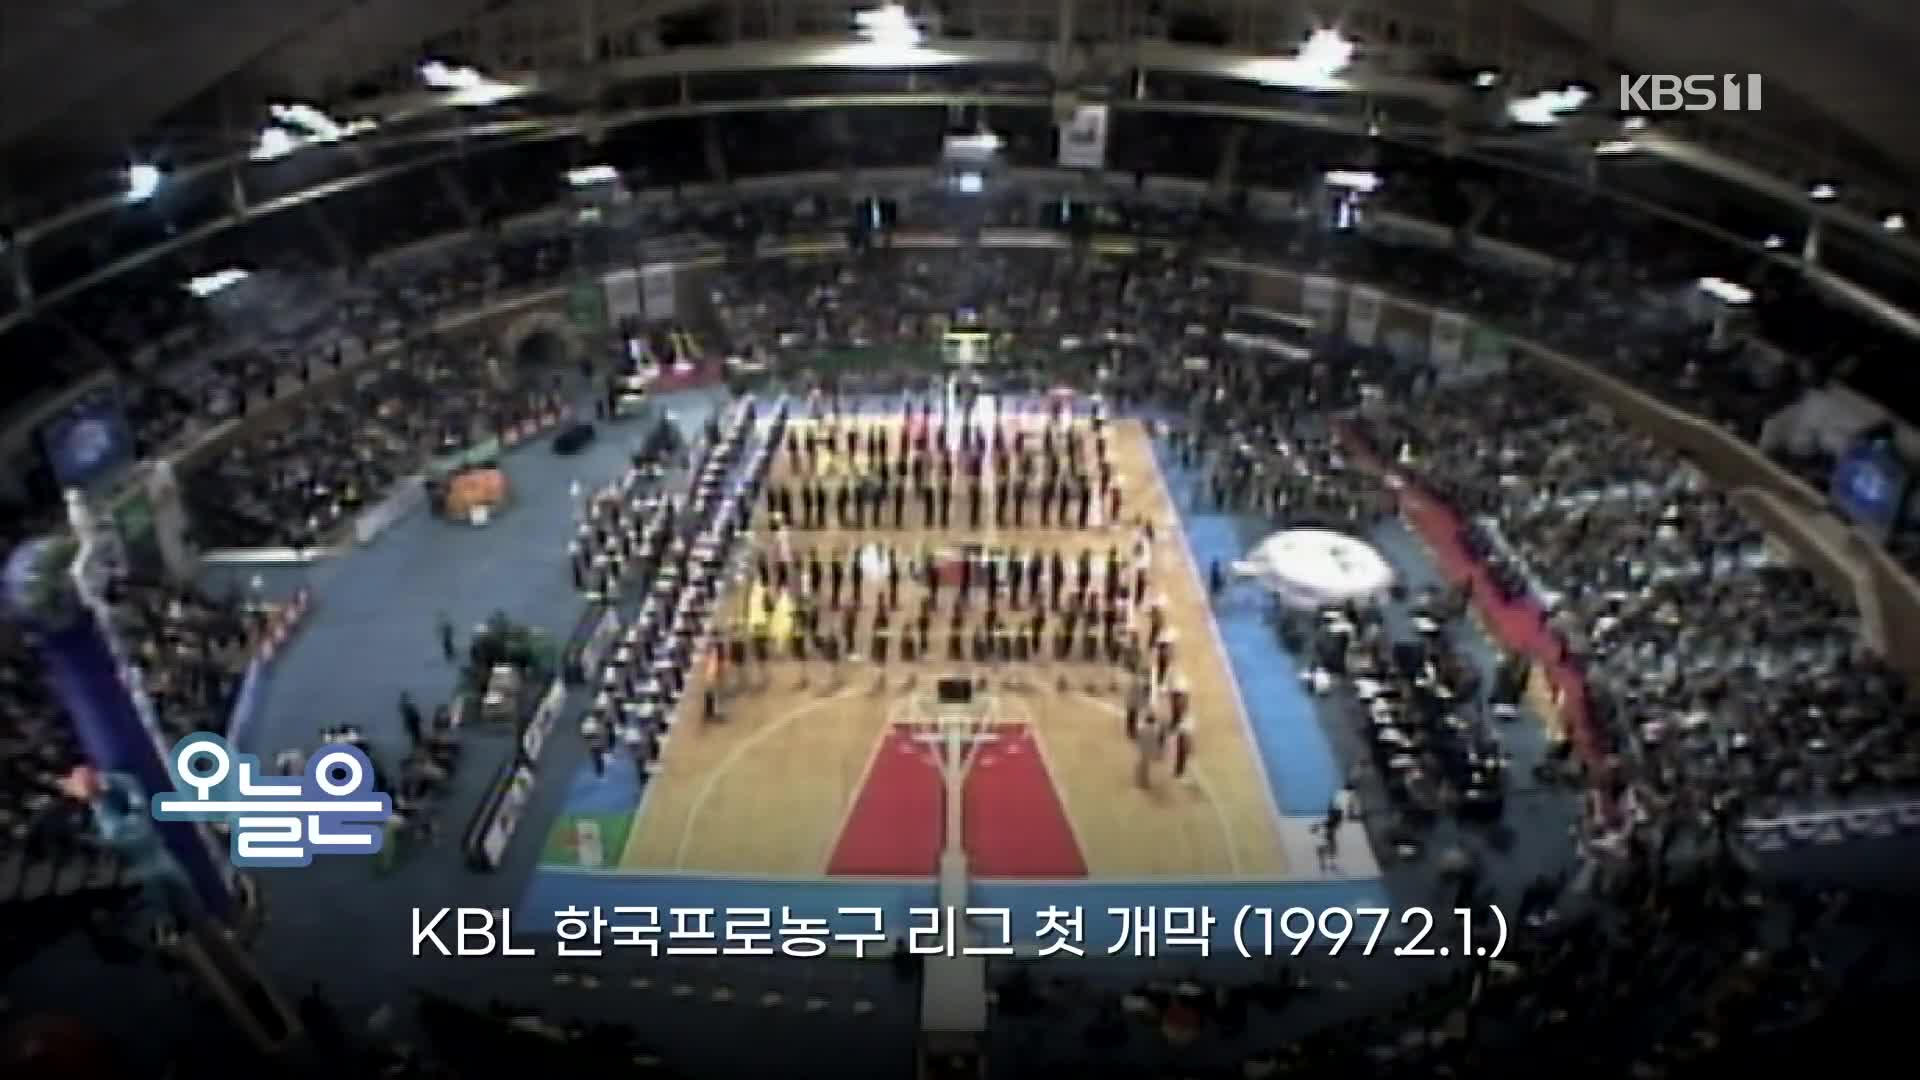 [오늘은] KBL 한국프로농구 리그 첫 개막 (1997.2.1.)